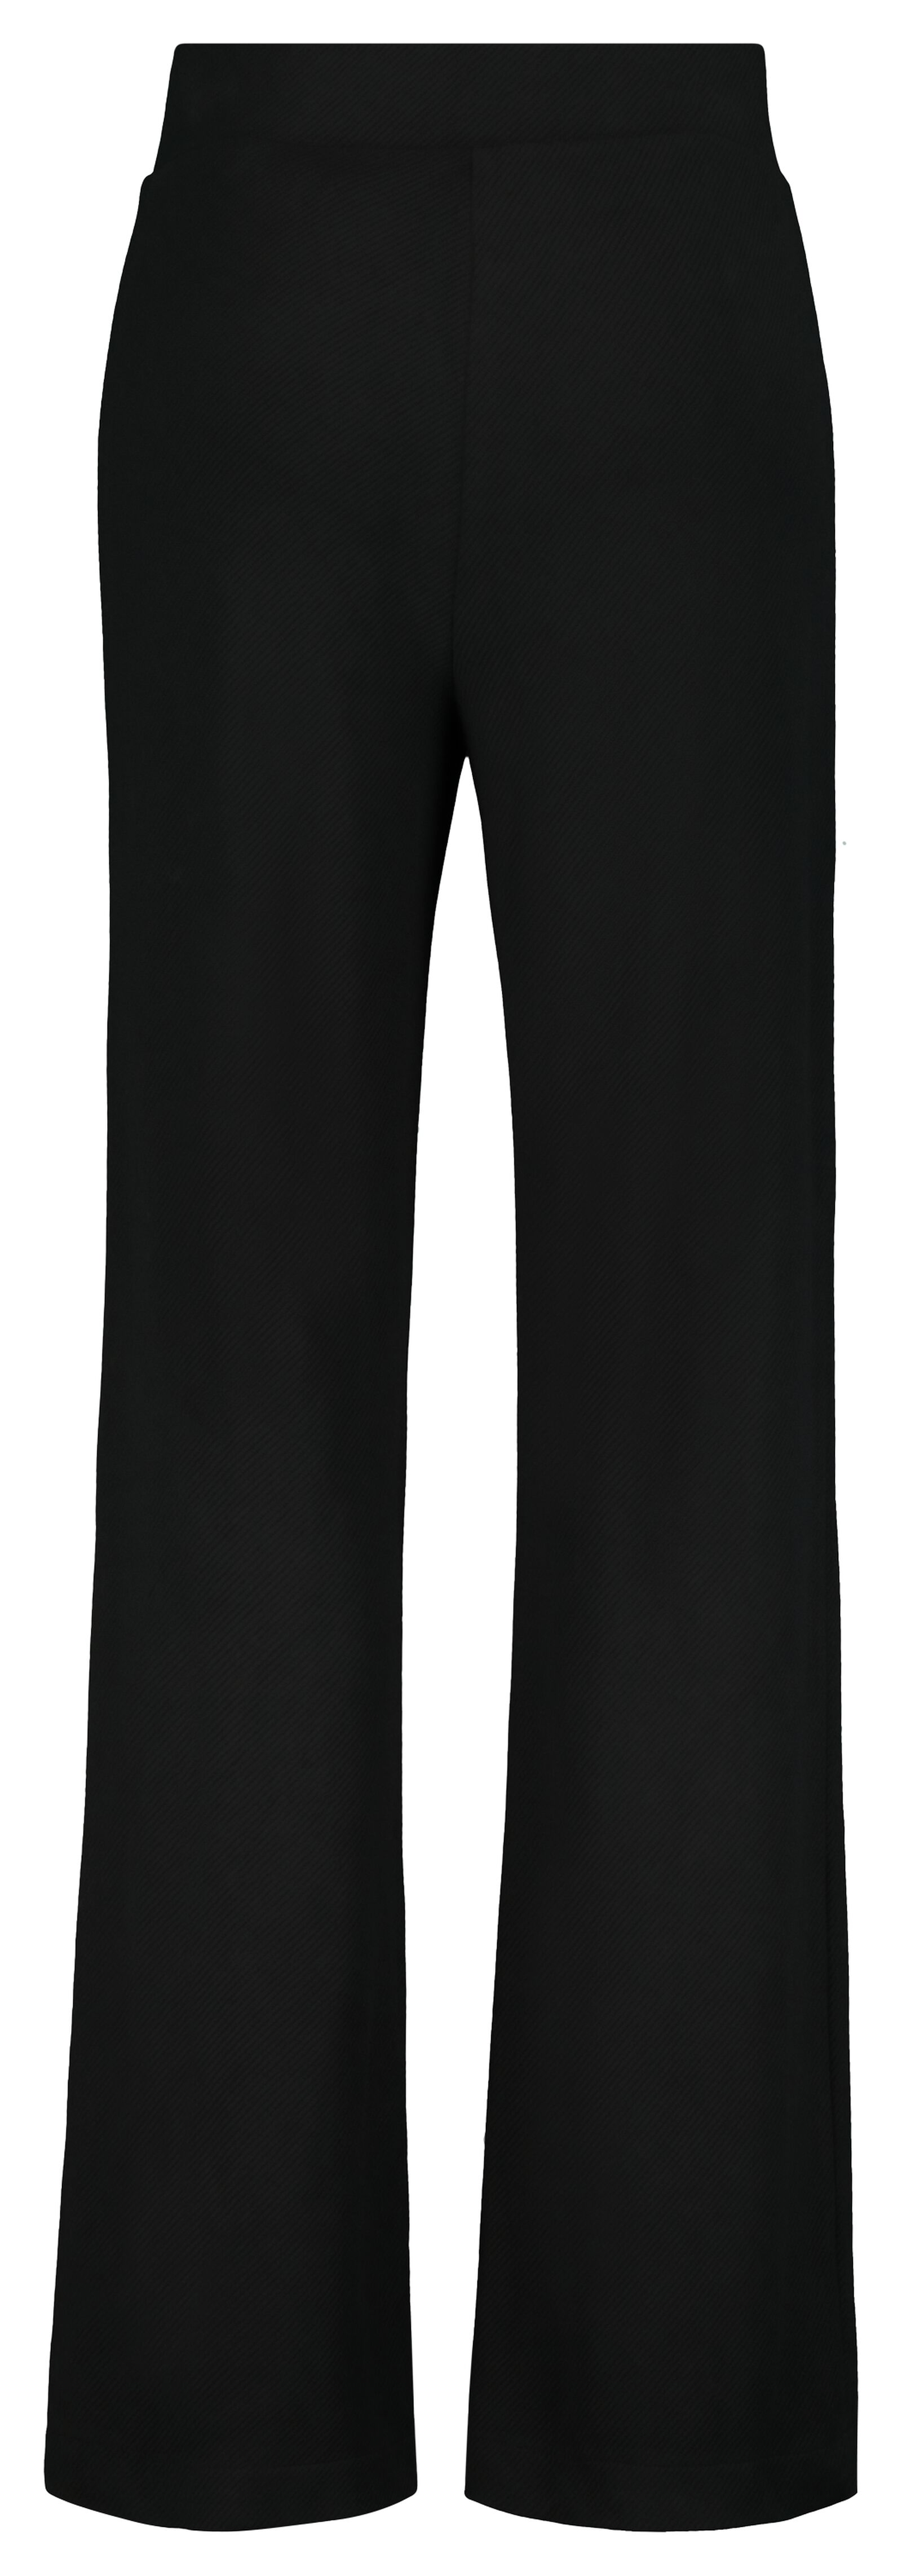 pantalon femme noir L - 36218393 - HEMA